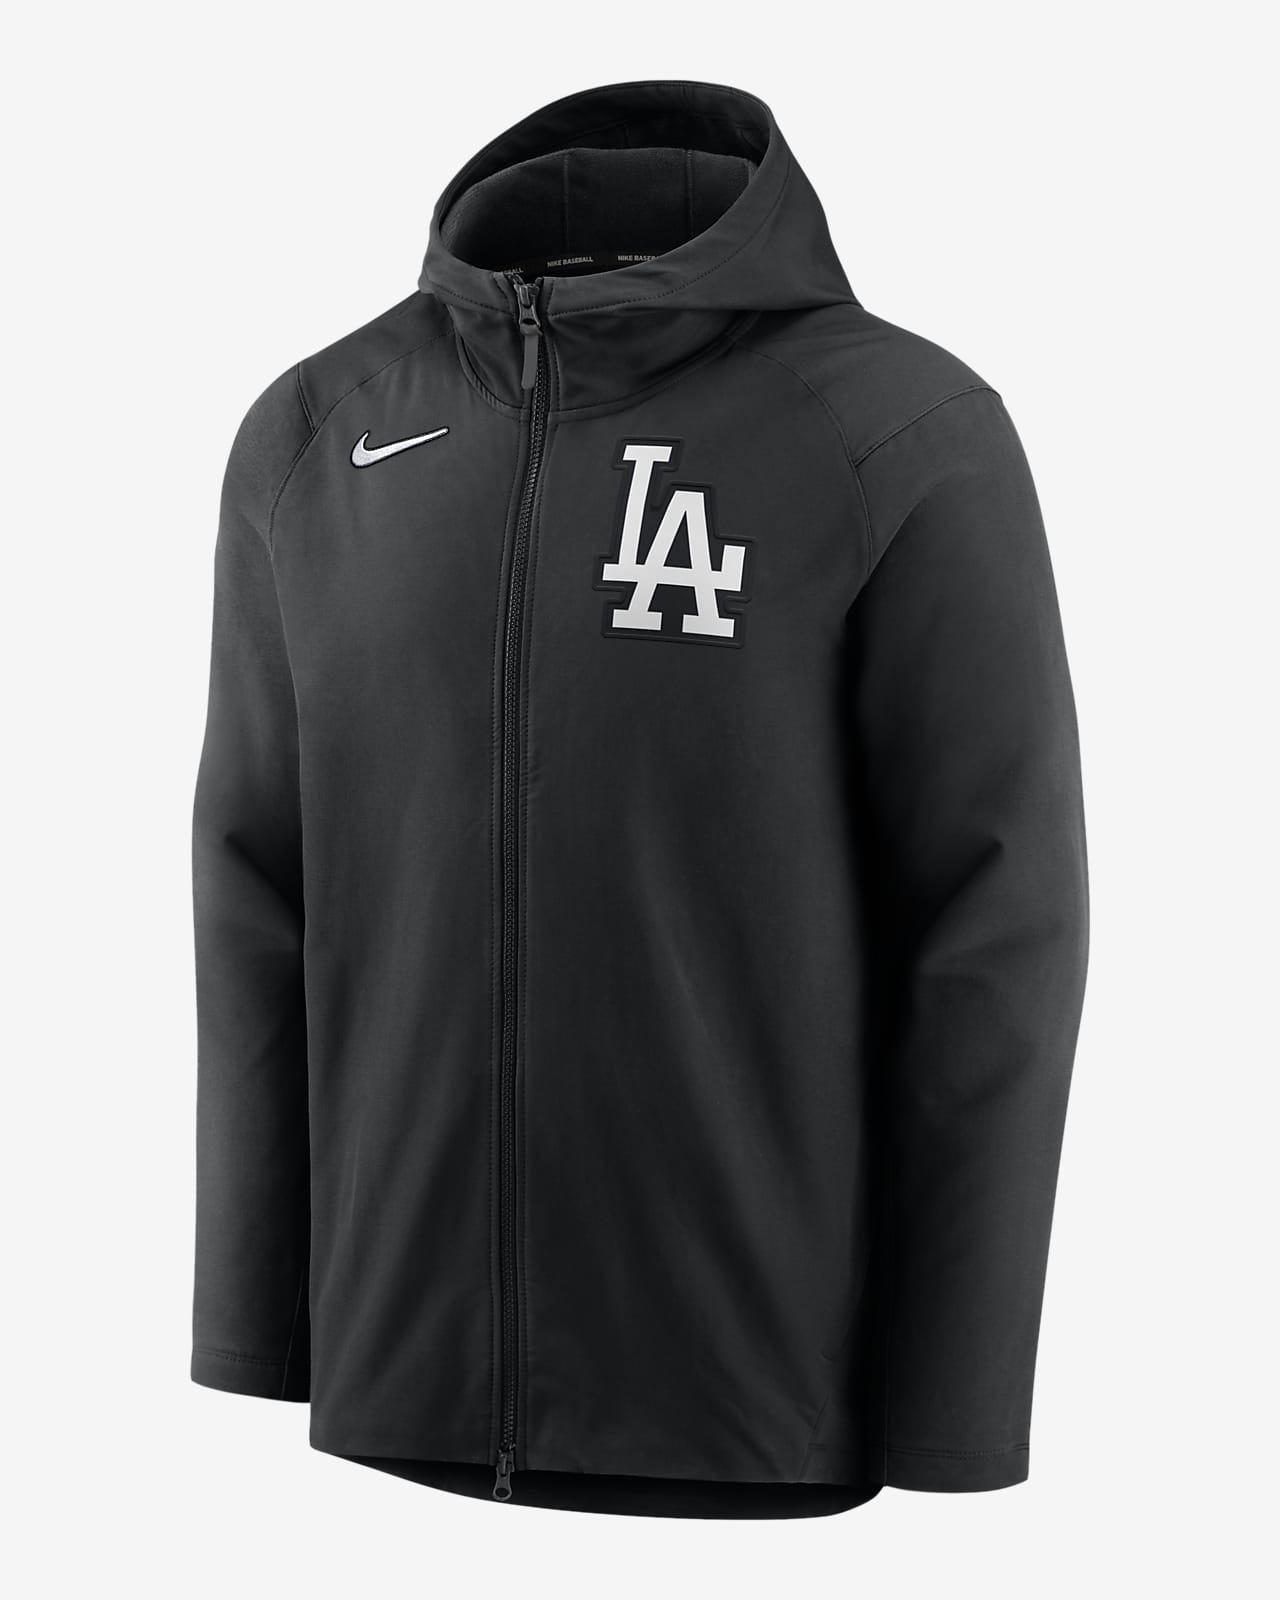 L.A. Dodgers Mens Sweatshirts, Dodgers Mens Hoodies, Mens Fleece